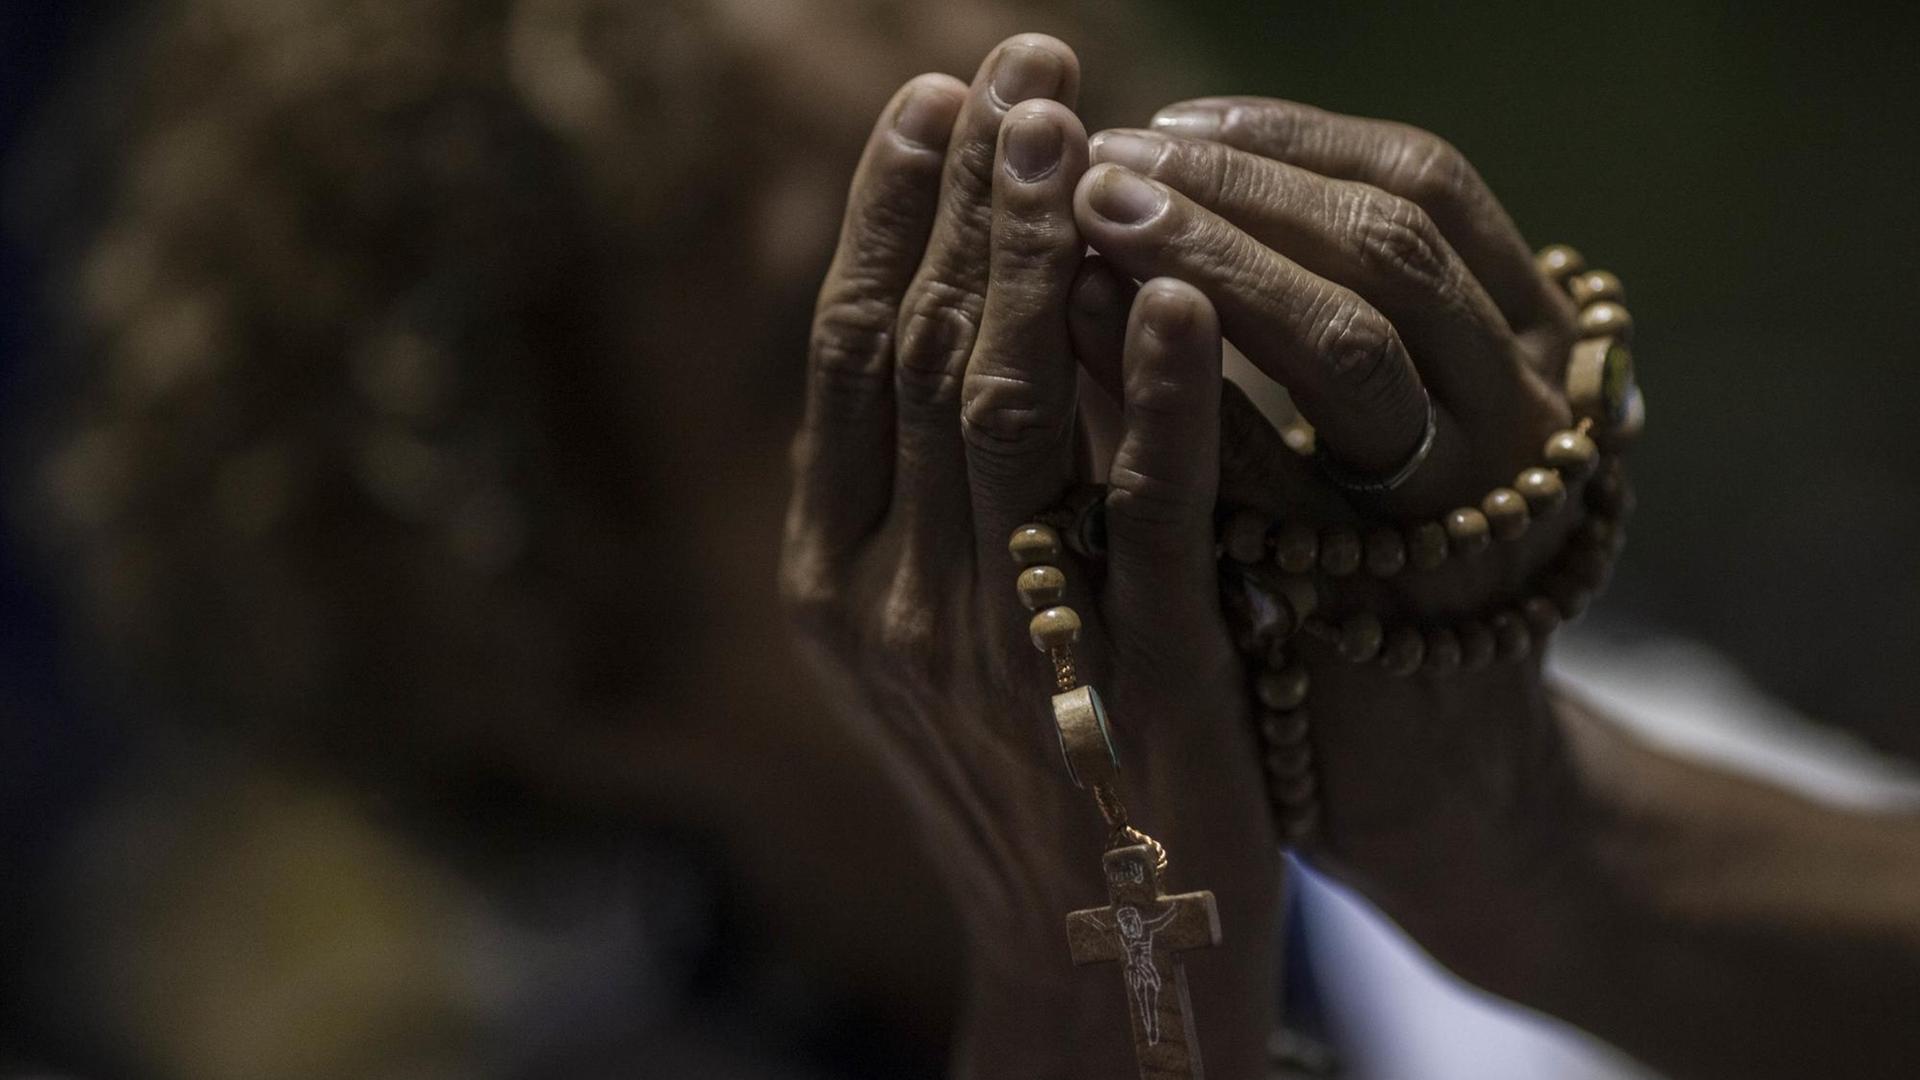 Dunkelhäufige Hände halten beim Gebet eine Kette mit einem Kreuz.